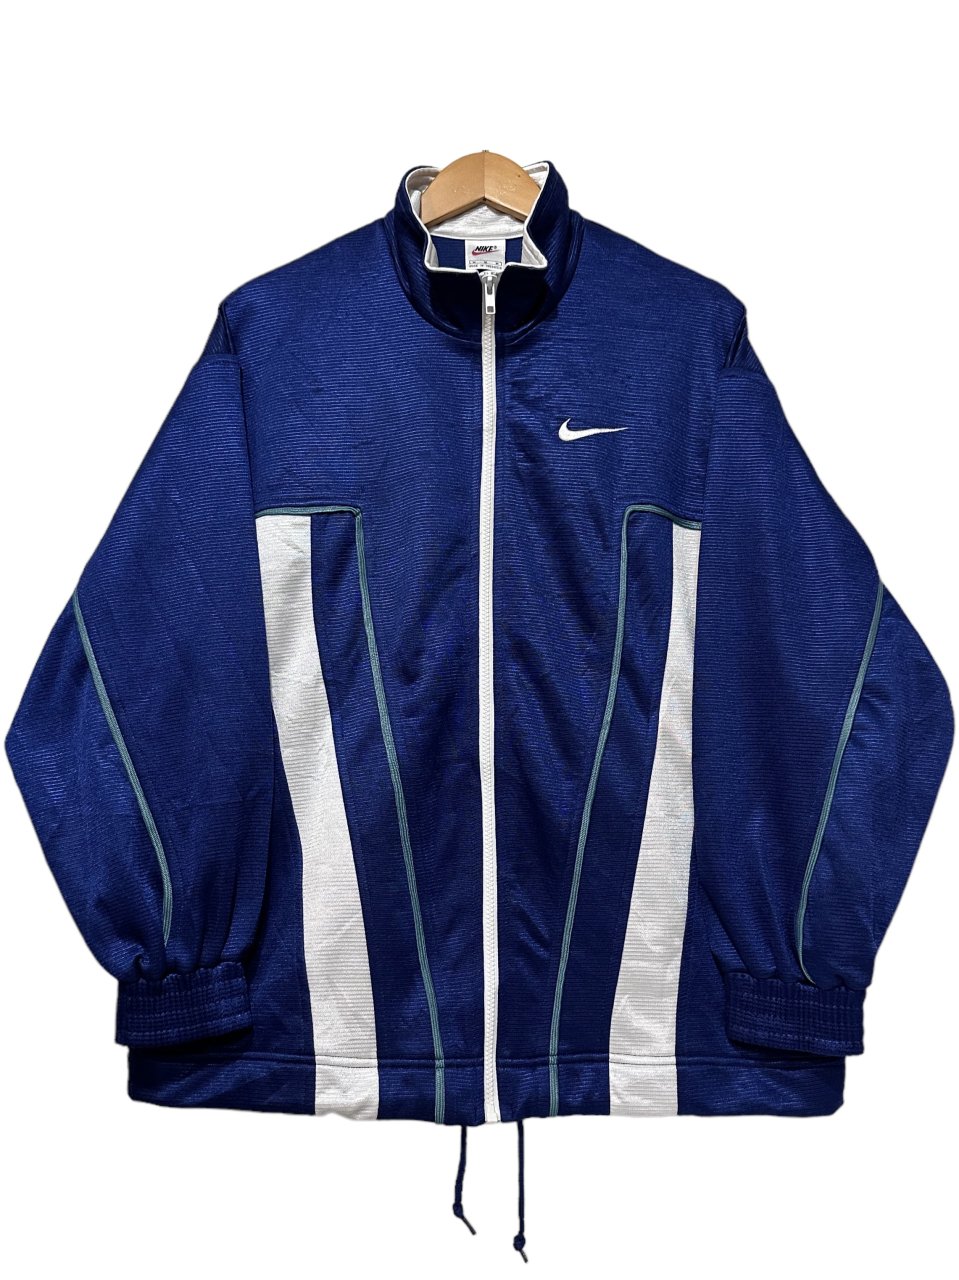 【vintage】90s nike track jacket